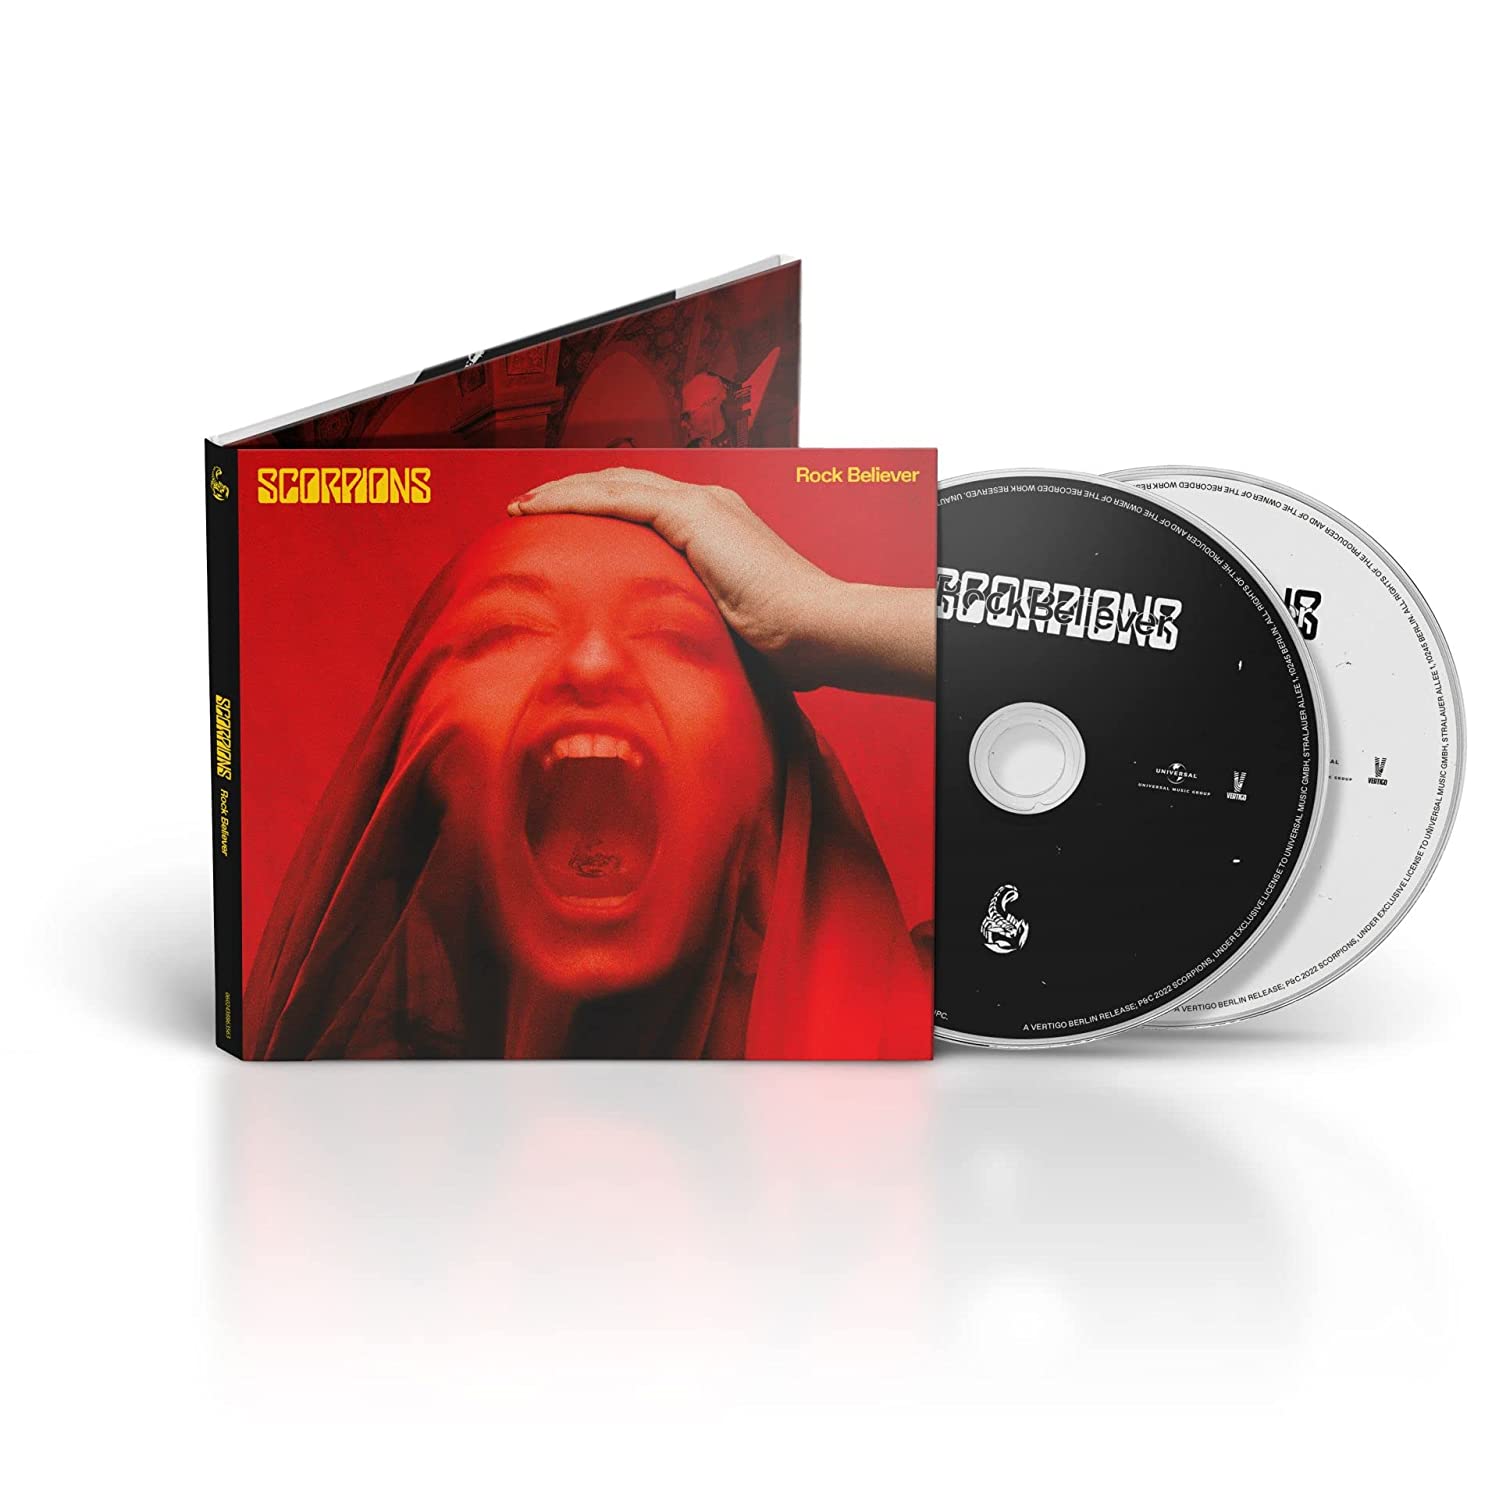 Scorpions - Rock Believer (Deluxe Edition) (2 CD)